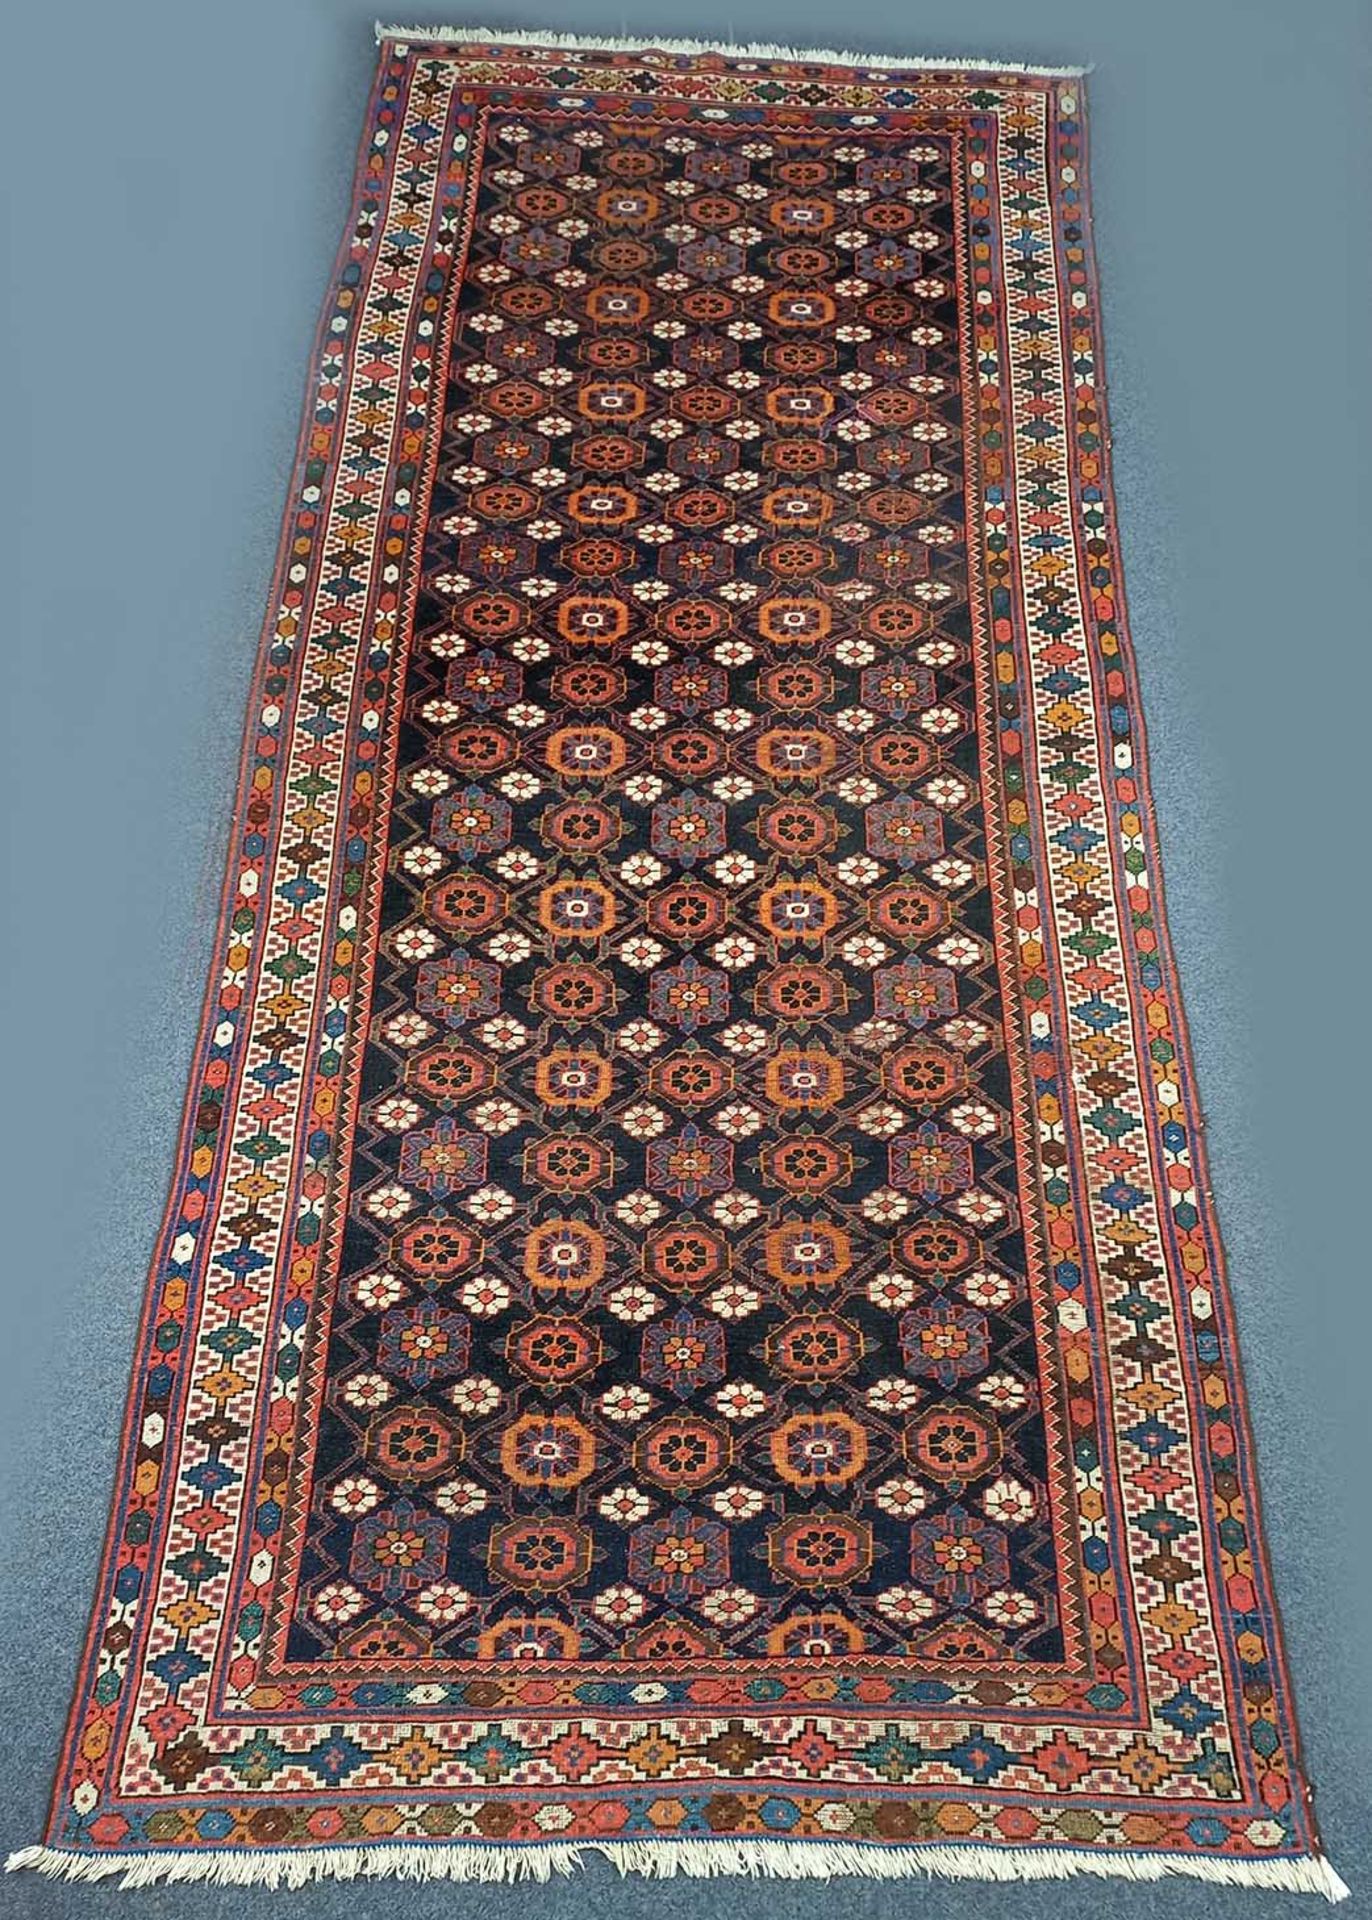 Veramin Shah - Savan Teppich. Antik. - Image 2 of 15